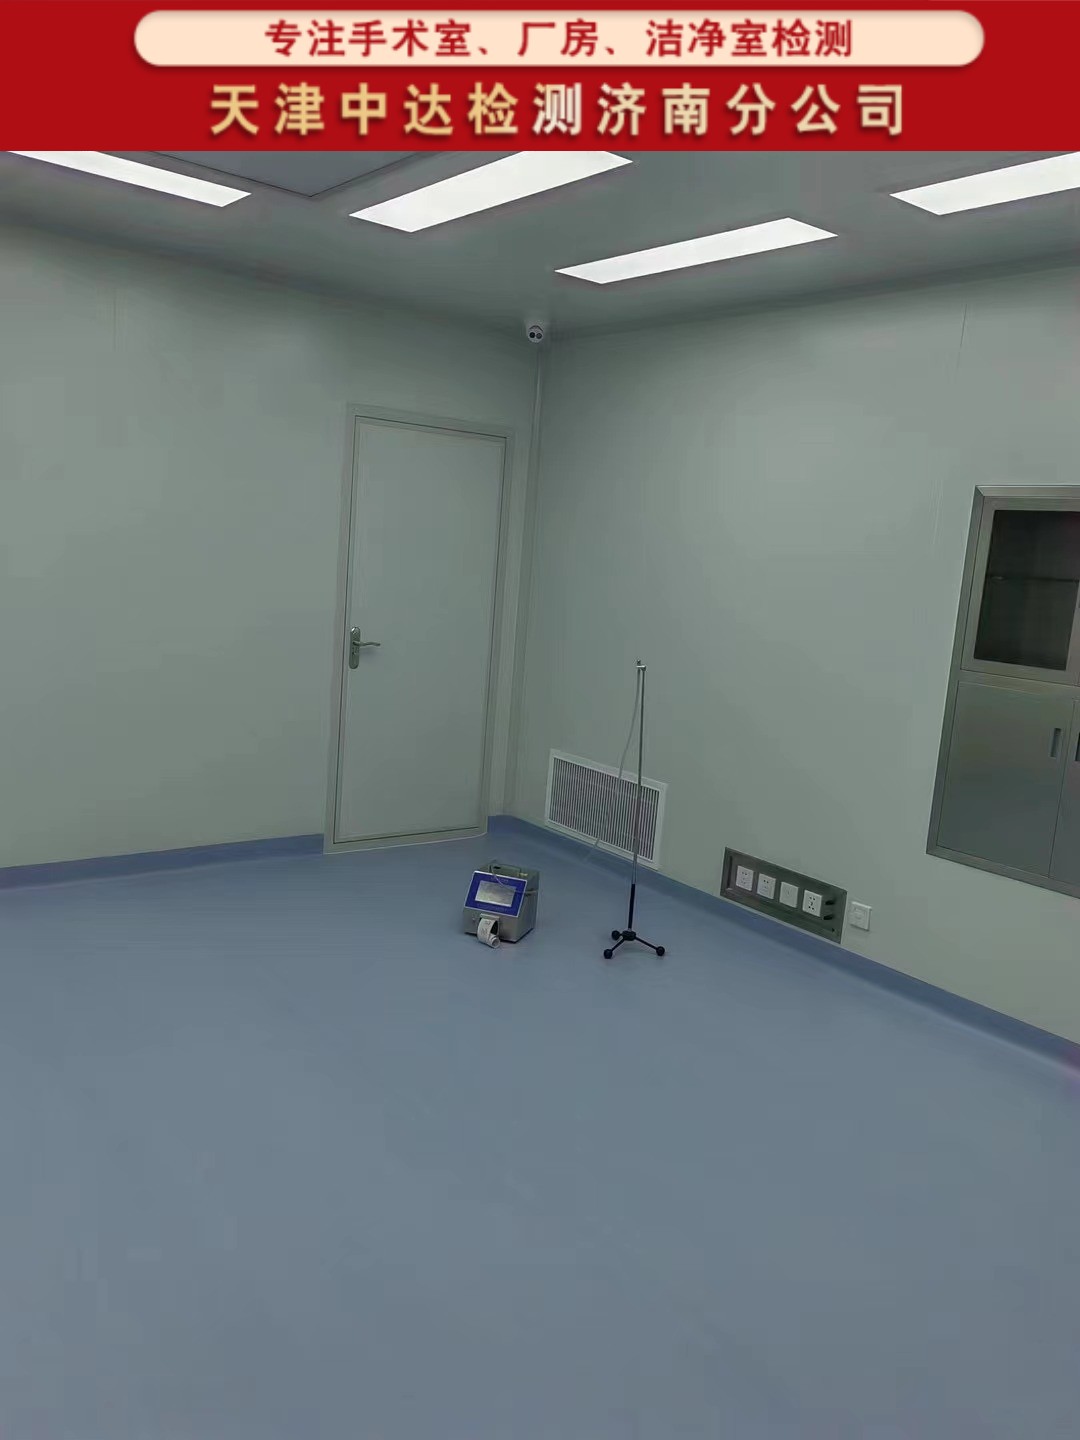 青岛崂山区医院CMA检测手术室、ICU层流检测部门-天津中达检测济南分公司